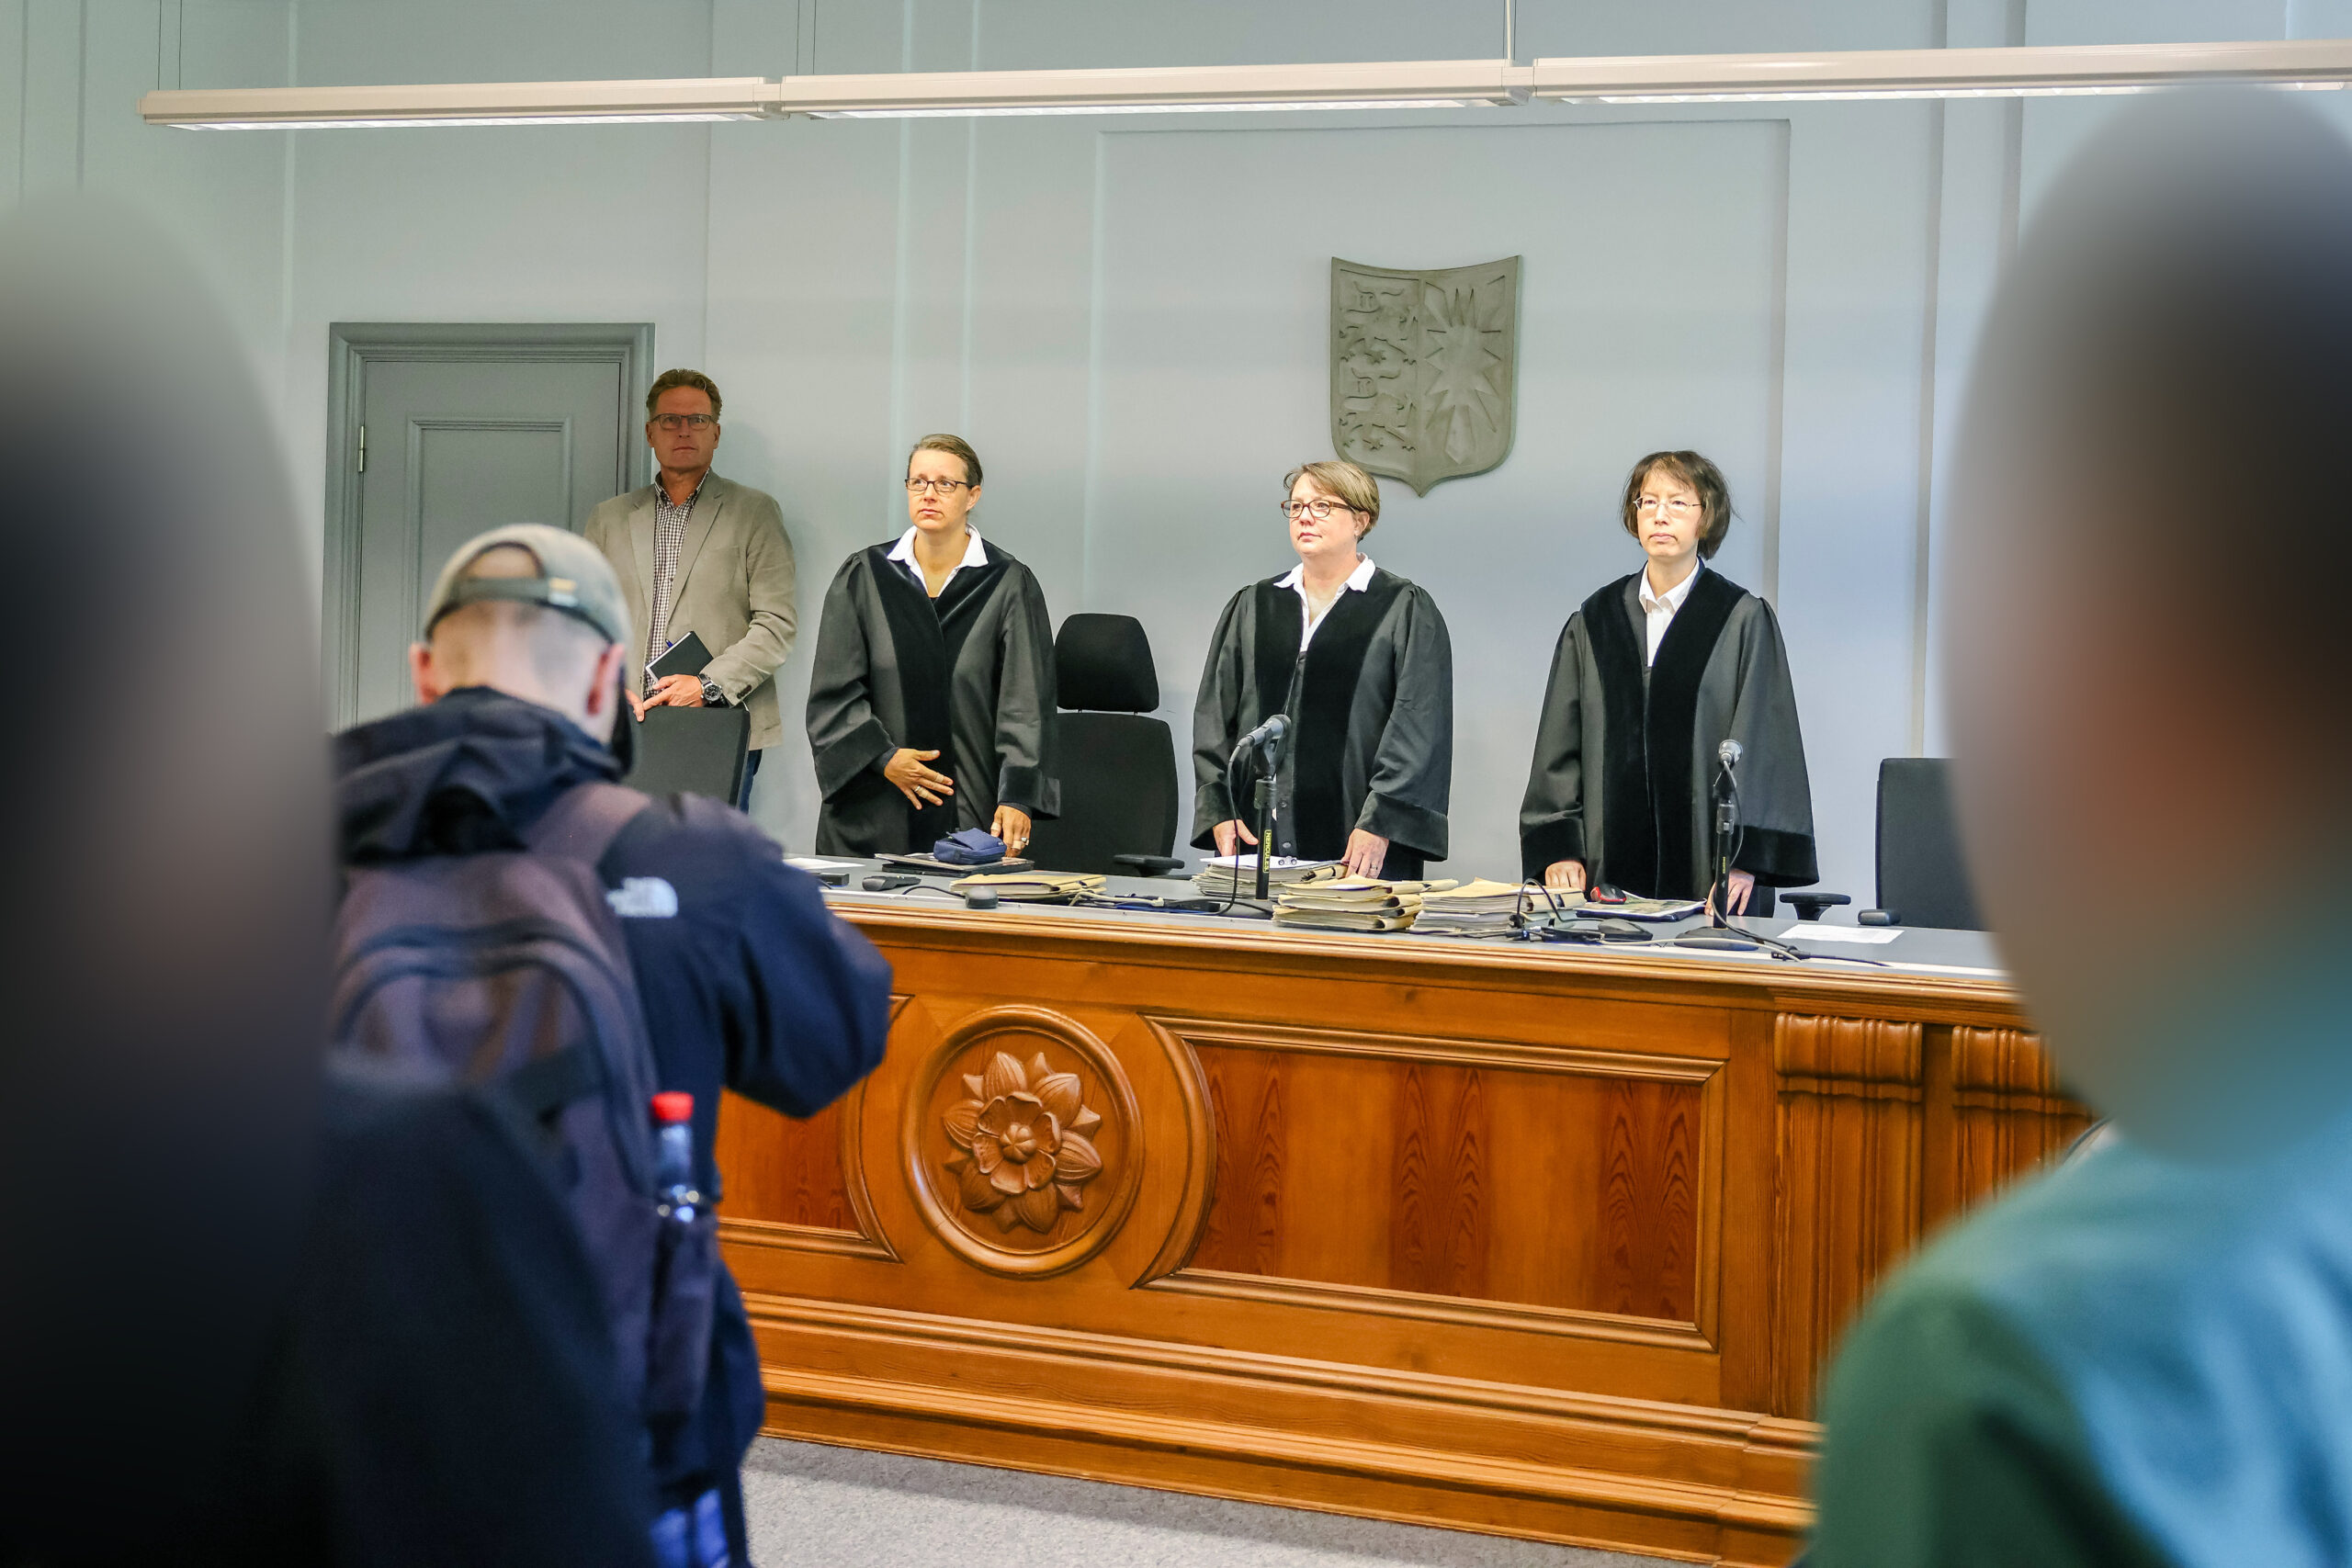 Die Vorsitzende Richterin Maja Bromman (M.) mir ihren Beisitzerinnen im Gerichtssaal